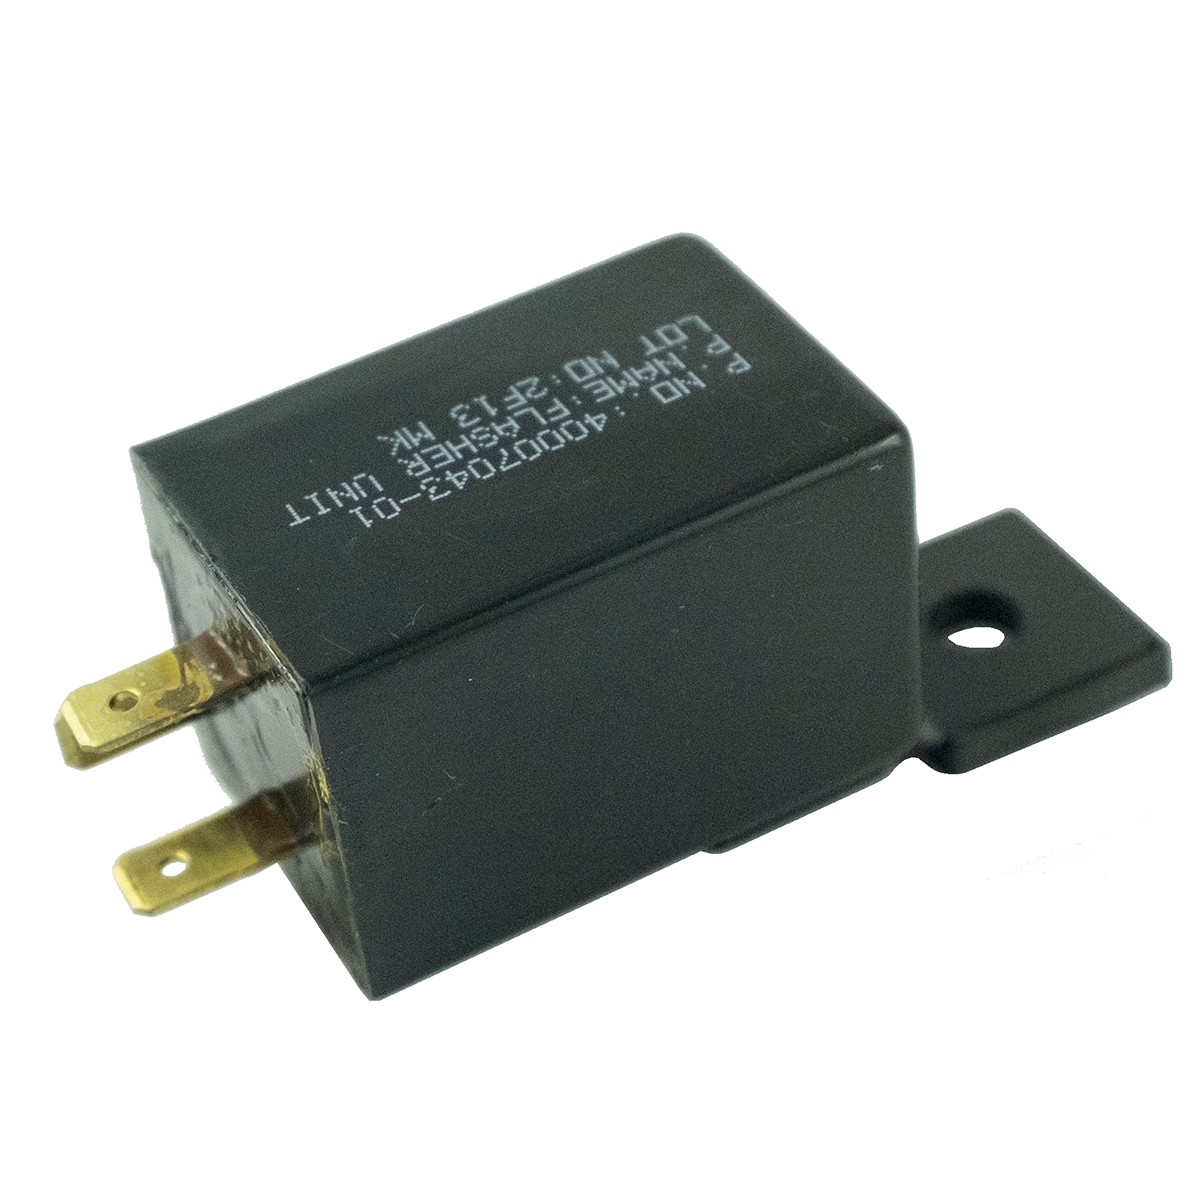 Relé, módulo indicador 12V/110W / LS R4041 / TRG750 / A1750251 / 40007043